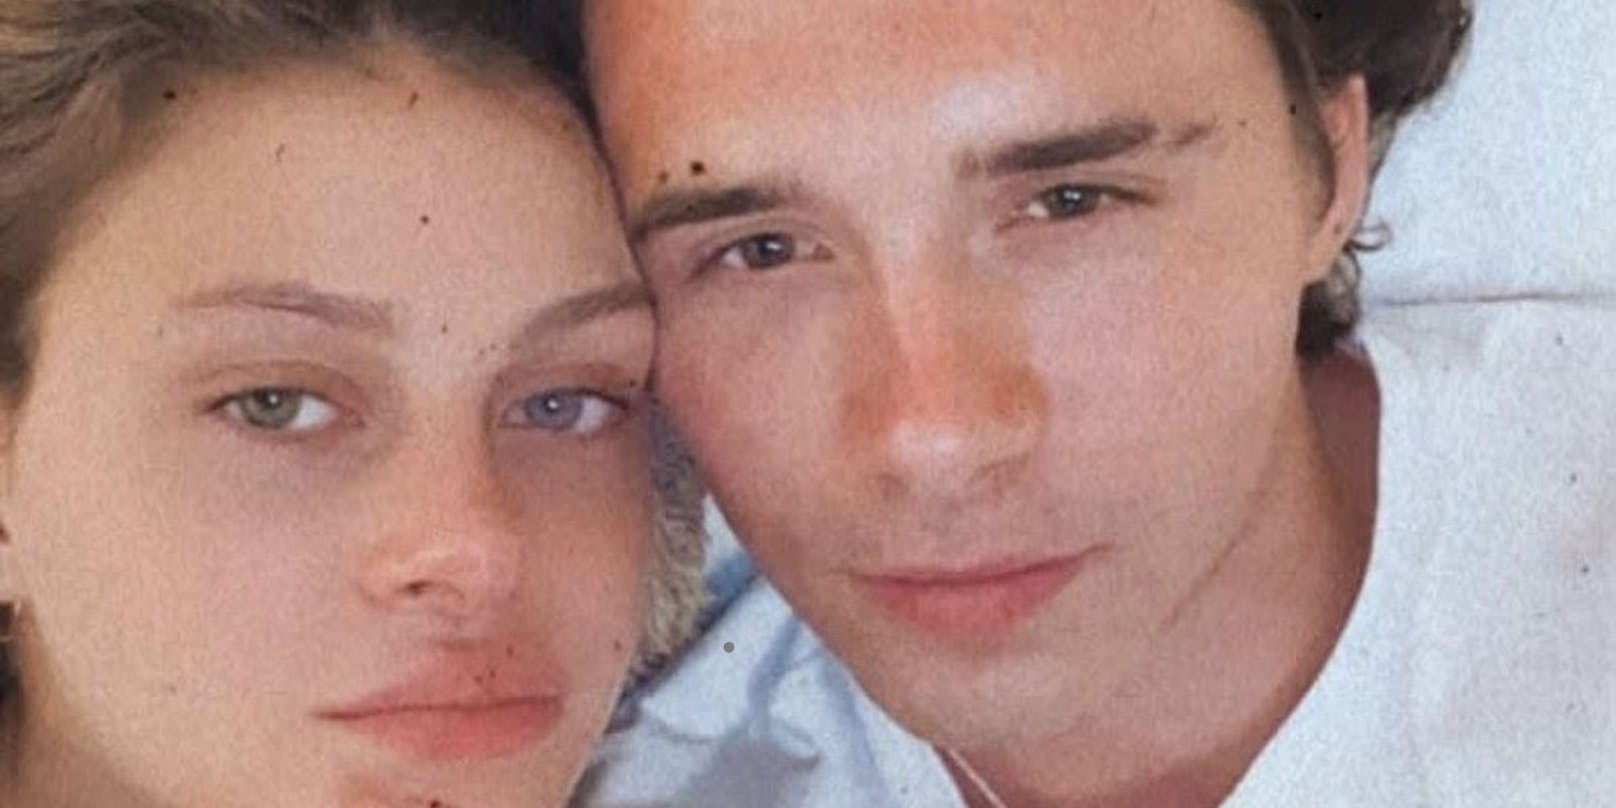 Brooklyn Beckham (21) und Nicola Peltz (25) kennen sich erst seit sieben Monaten - bald folgt die Hochzeit!